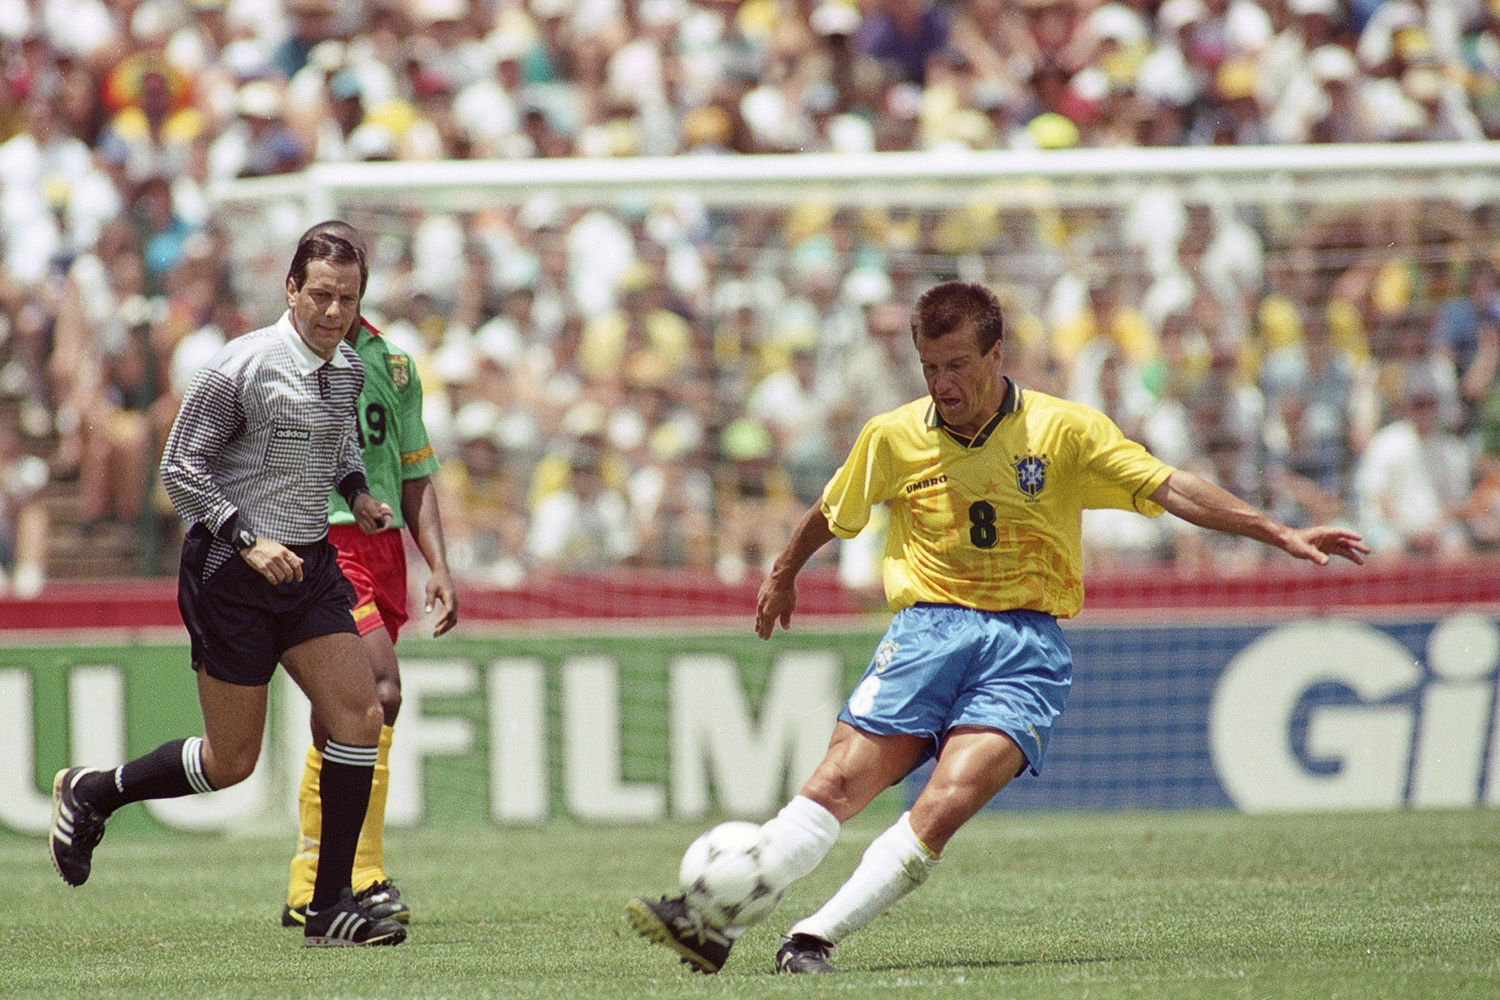 https://placar.com.br/wp-content/uploads/2021/09/dunga-do-brasil-no-jogo-contra-camarocc83es-pela-copa-do-mundo-de-1994-no-estacc81di_1.jpg